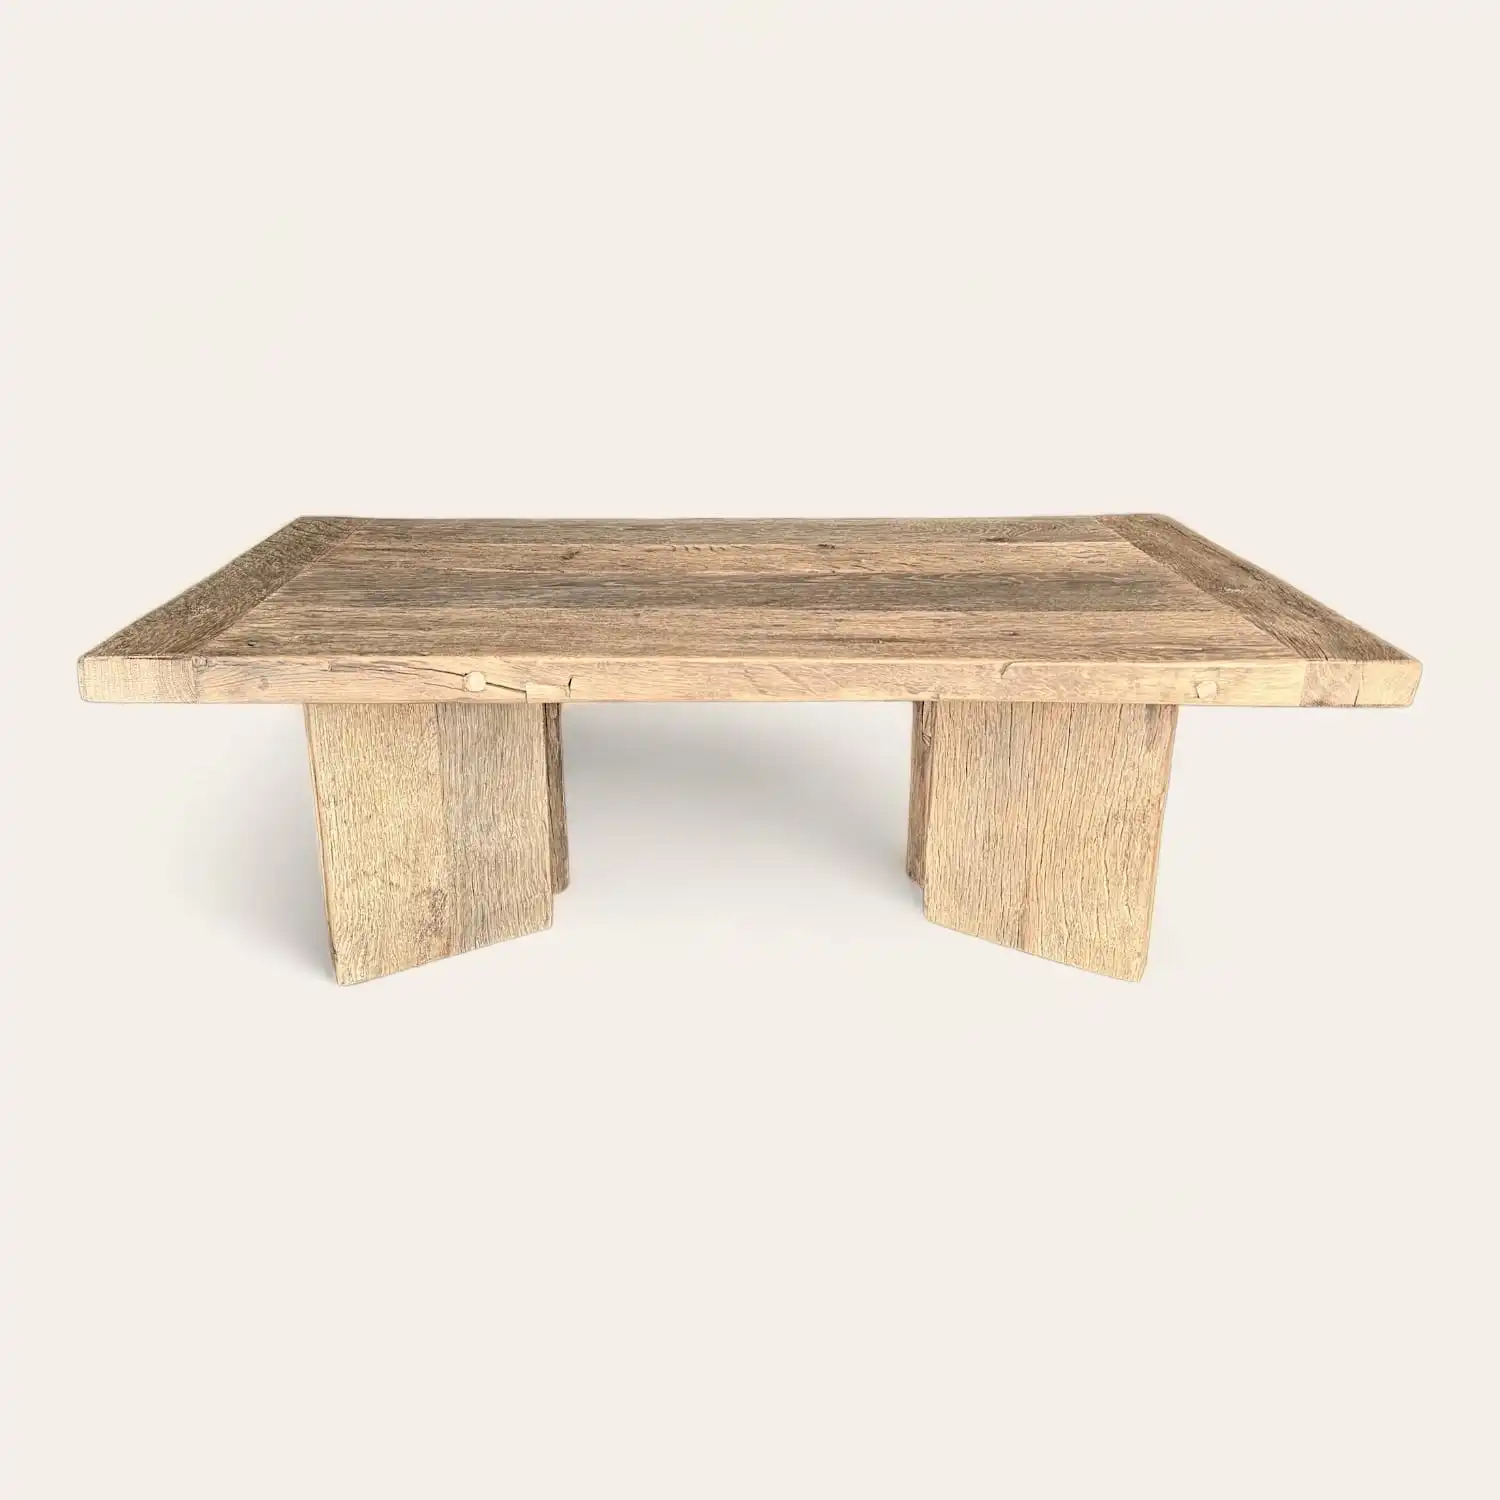  Une table à manger rustique en bois ancien avec un piètement en bois. 